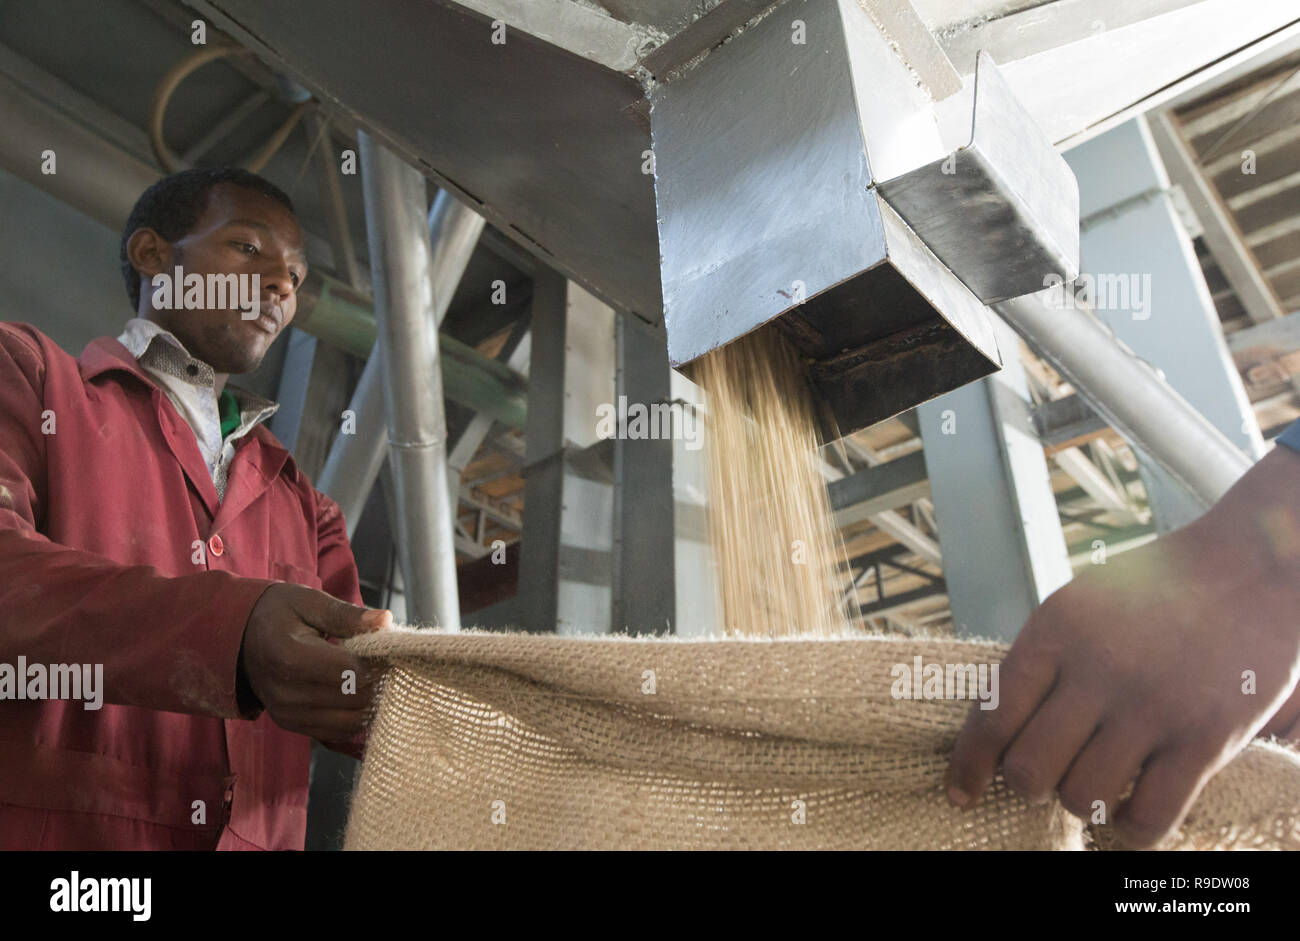 (181223) -- BEIJING, 23 de diciembre de 2018, (Xinhua) -- Los trabajadores recogen los granos de café descascarado en SMS enterprise plc en Addis Abeba, capital de Etiopía, 12 de diciembre de 2018. Café arraigada en Etiopía es la materia prima de diversas bebidas de café preferido por gente de todo el mundo. Se dice que el café fue descubierto por sheepherder en Kaffa, Southwestern en Etiopía, de la que el nombre de café ha evolucionado. Granos de café de Etiopía se exportan a China, principalmente por mar. Pelan los granos de café verde son transportados hasta el puerto de Djibouti por carretera y ferrocarril y después de unos 21 días en el mar que finalmente lleg? Foto de stock